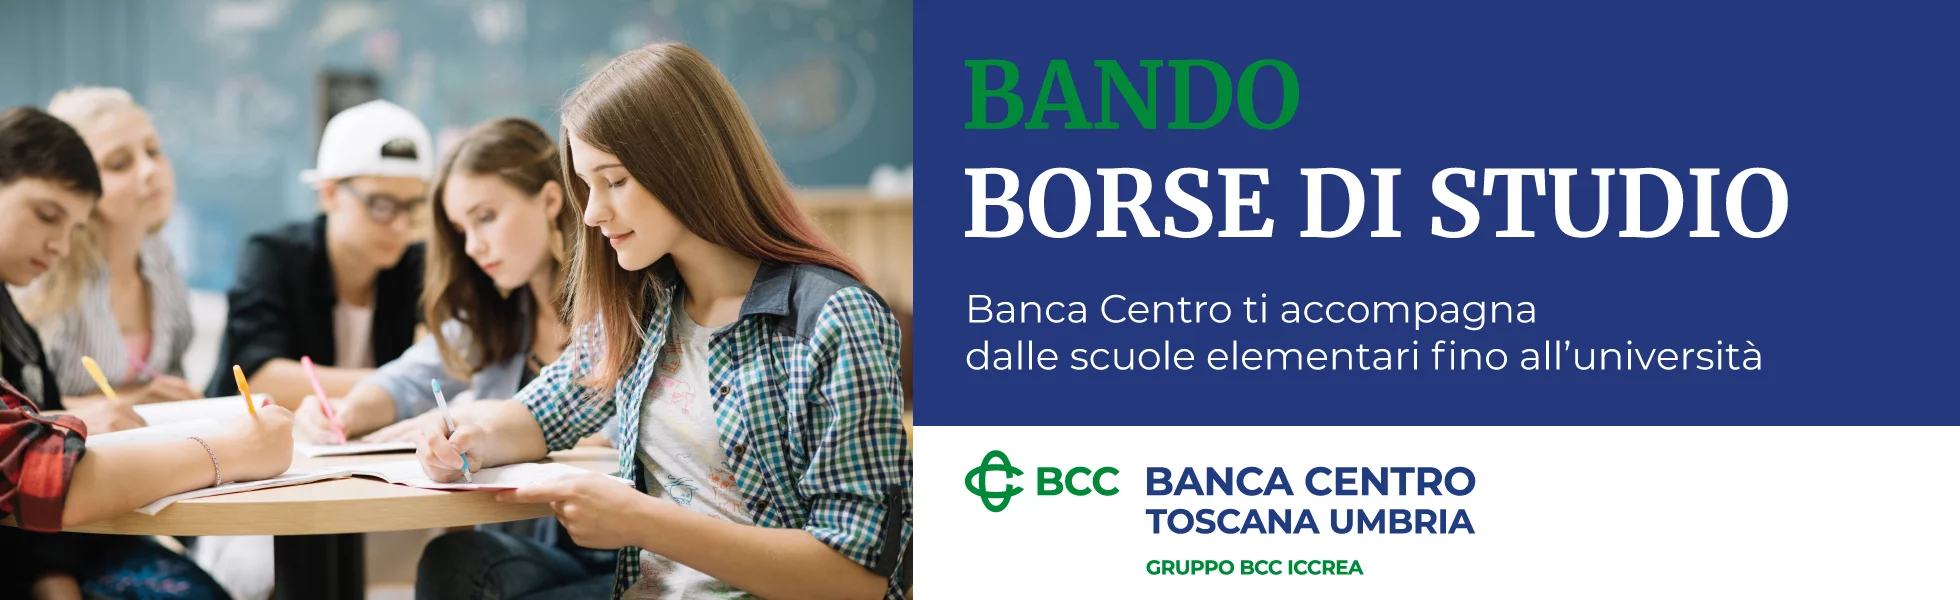 BancaCentro_borsedistudio_1960x600